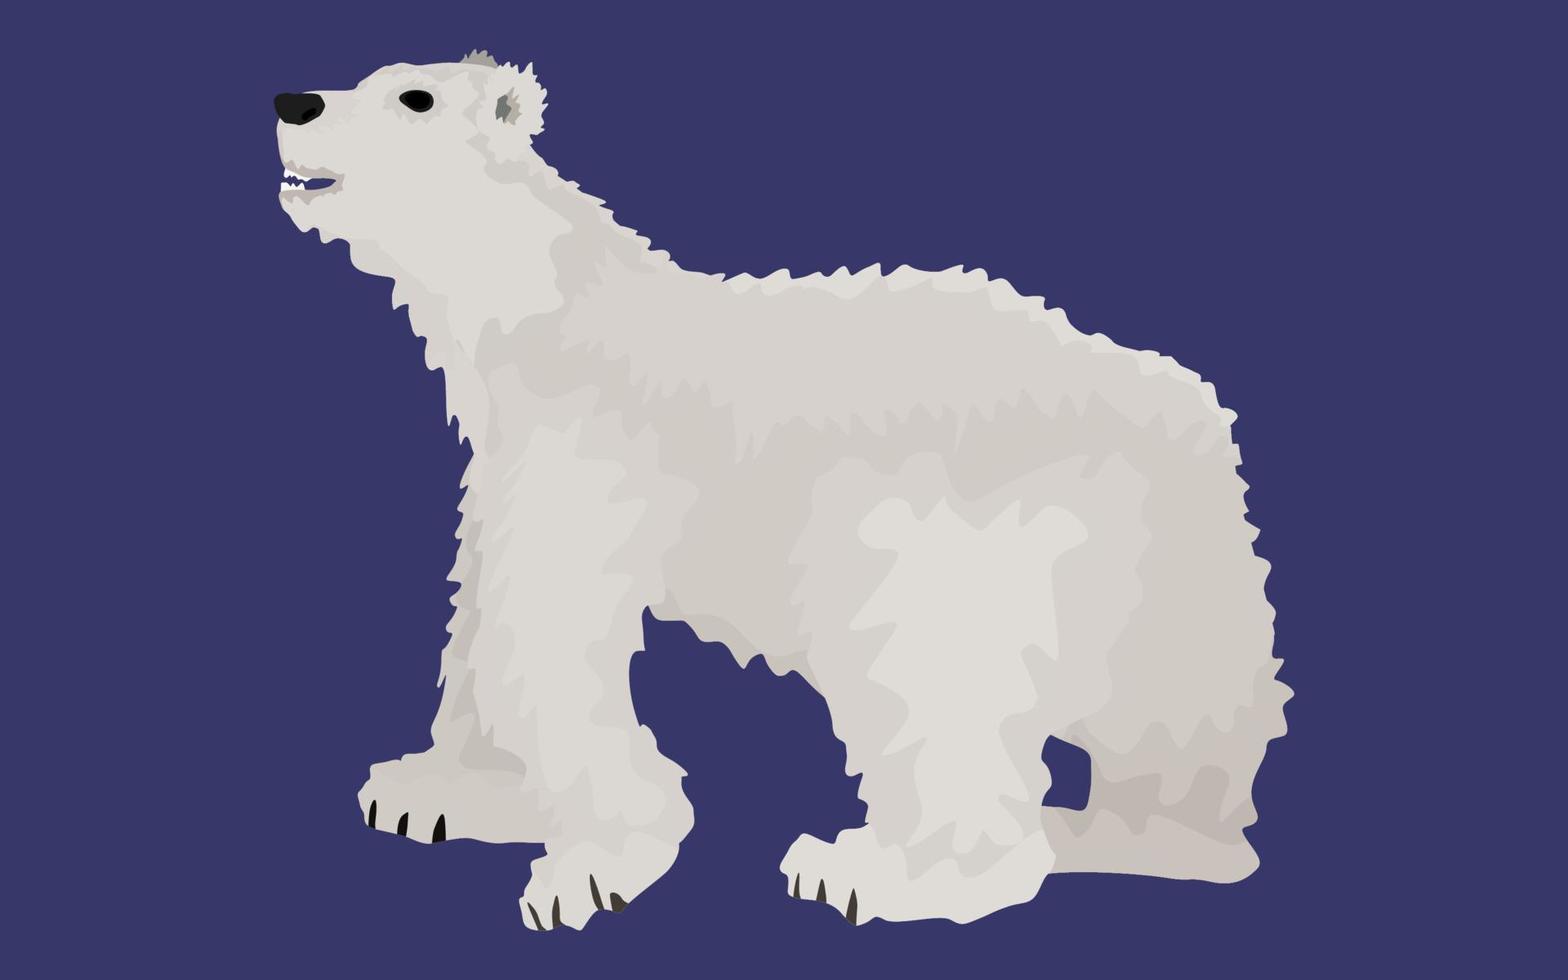 urso branco estilo simples. em um fundo escuro vetor